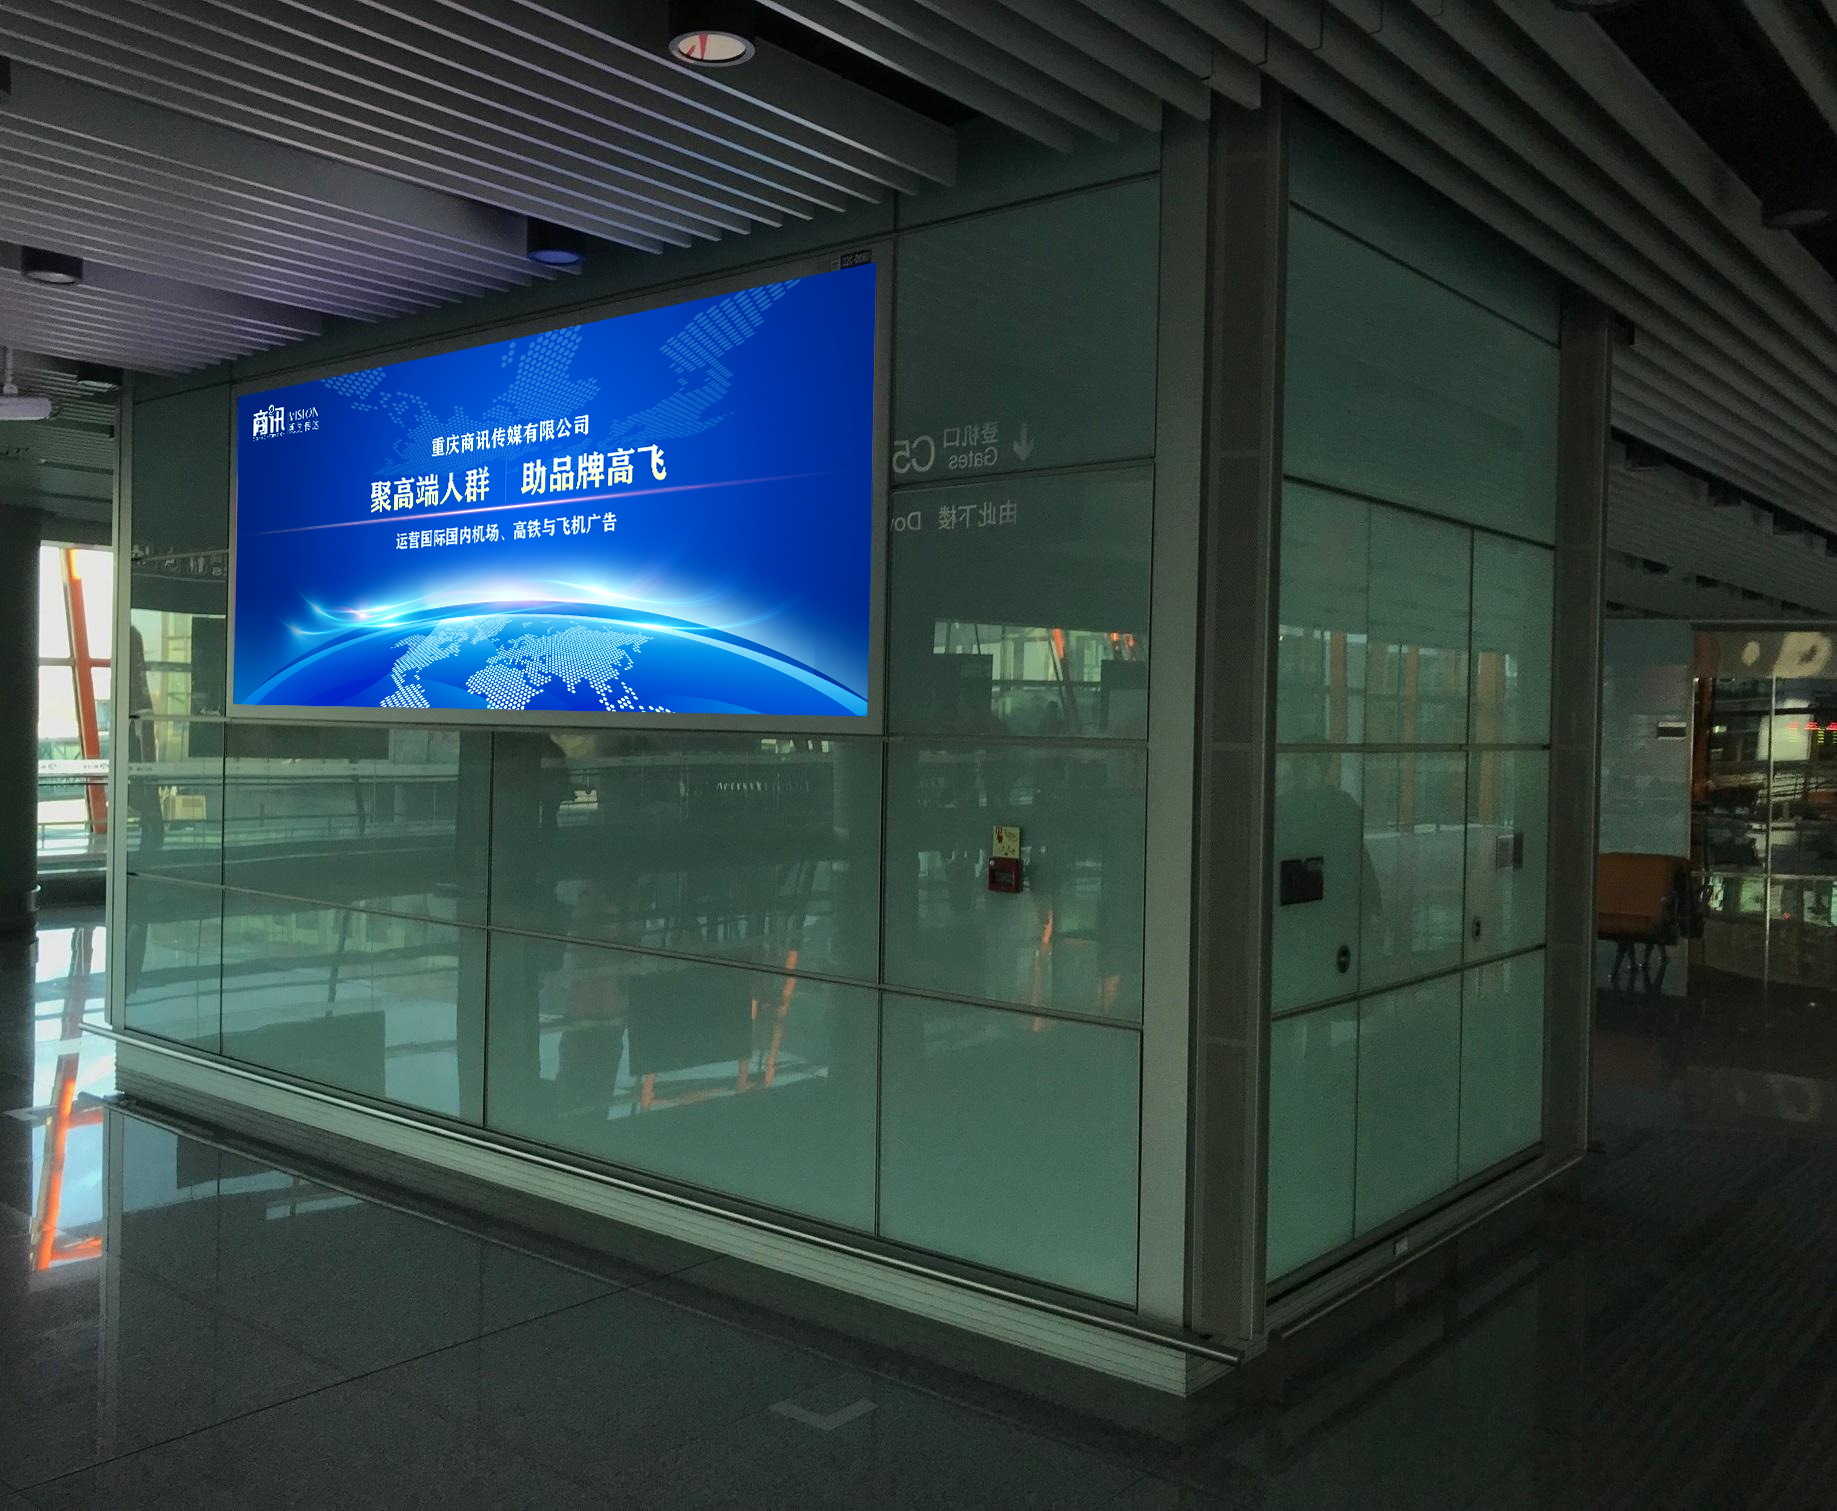 北京首都机场广告|品牌推广|机场广告|飞机广告|品牌策划|品牌设计公司